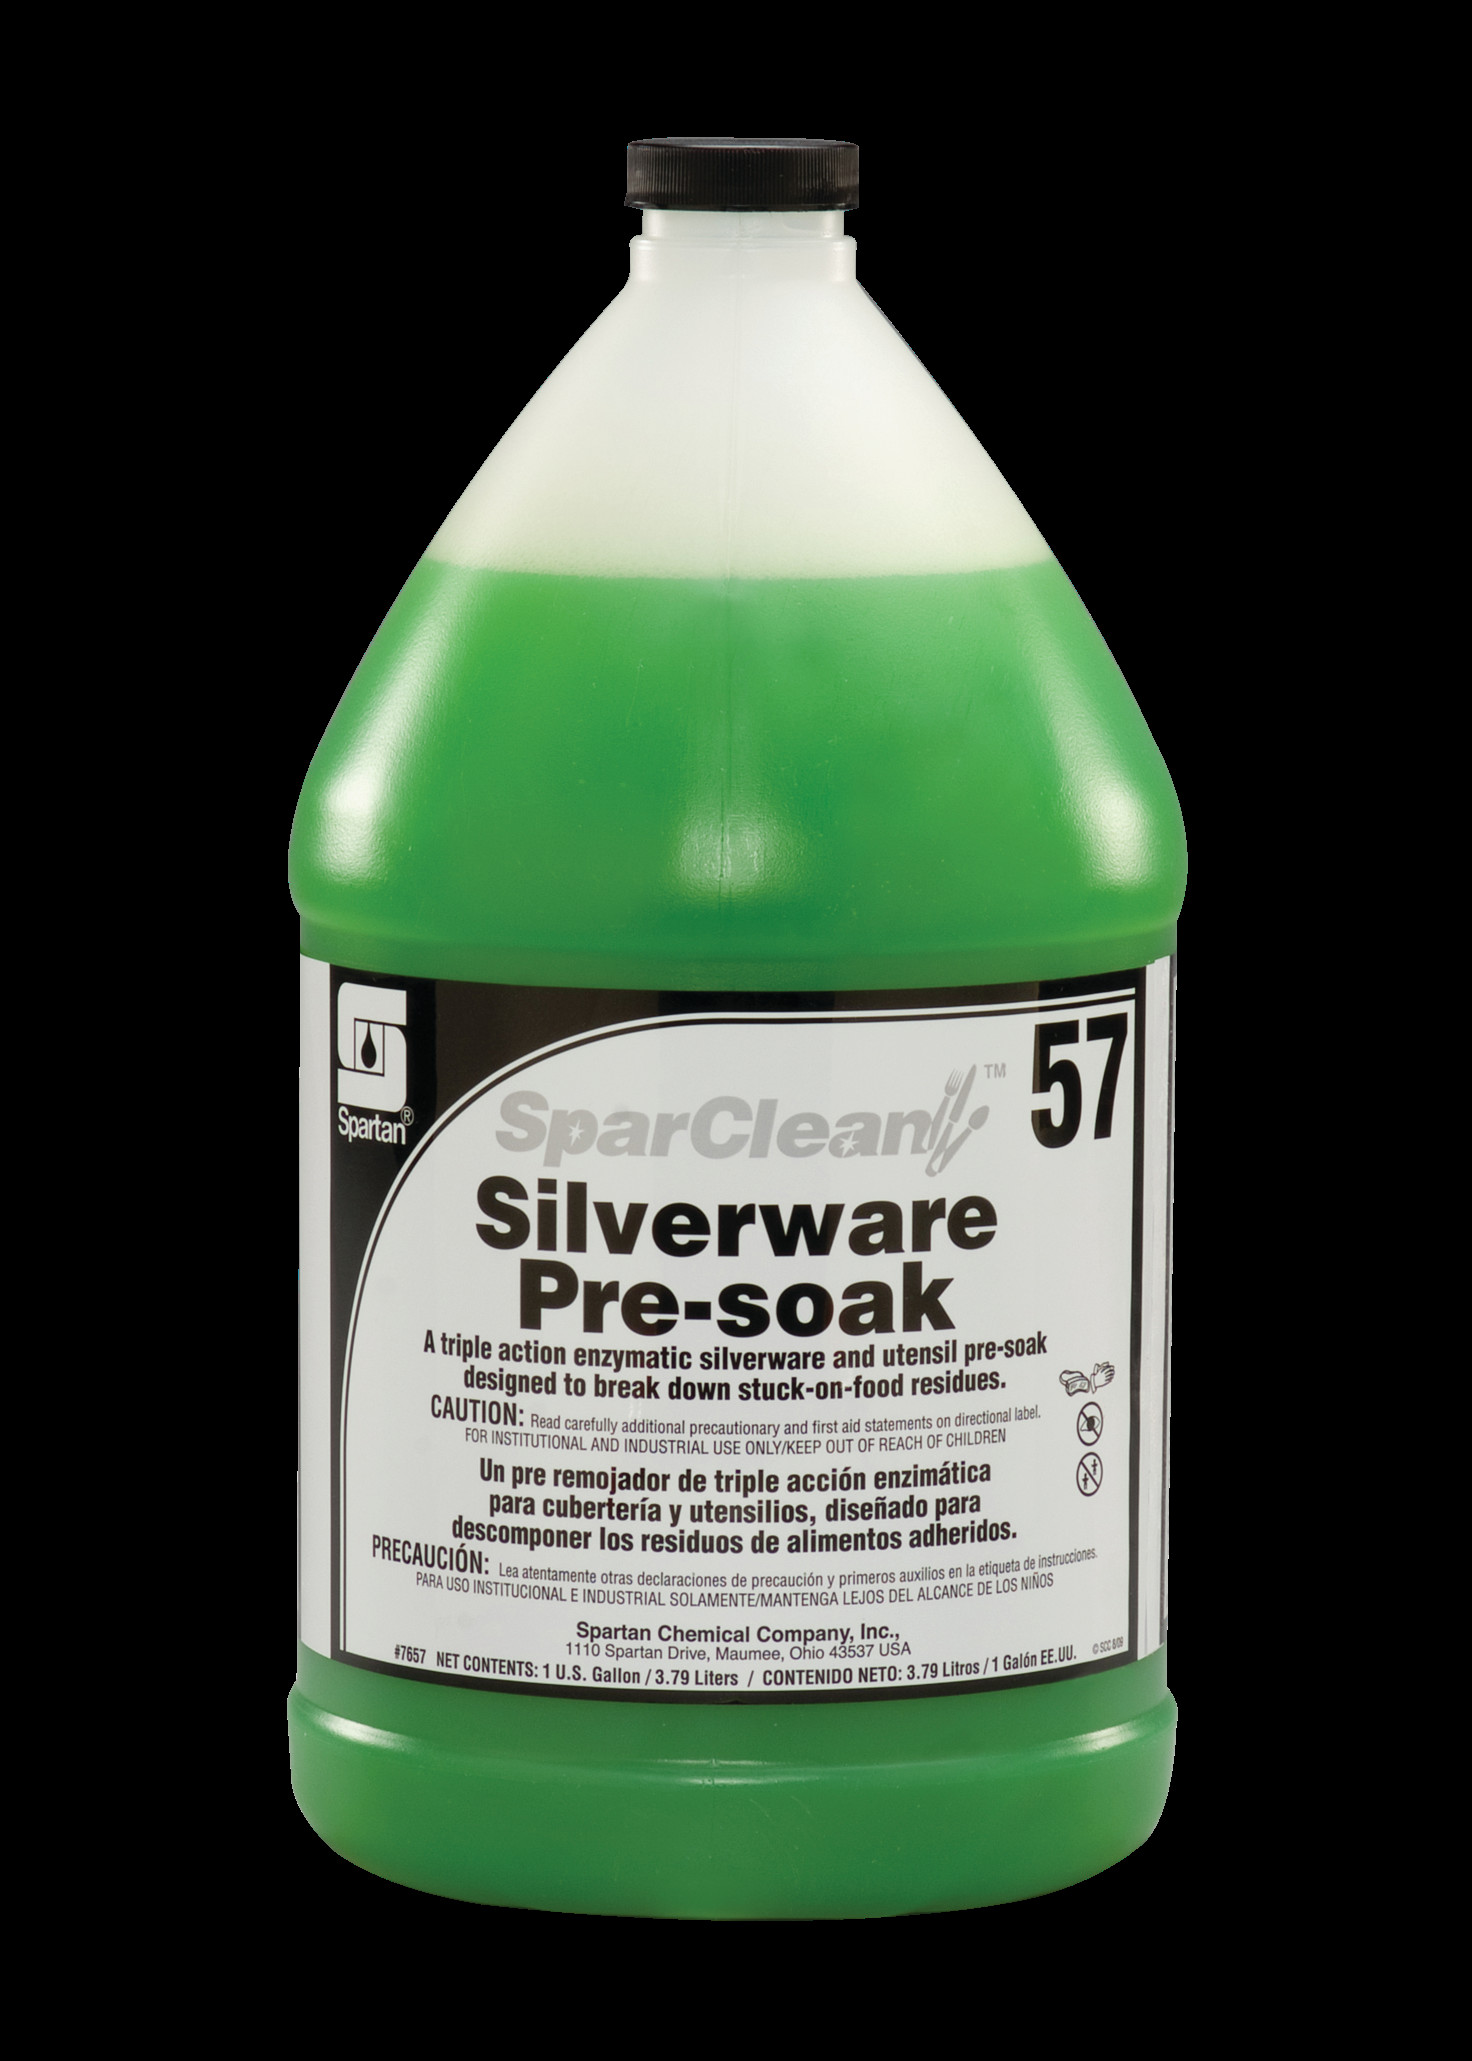 Spartan Chemical Company SparClean Silverware Pre-Soak 57, 1 GAL 4/CSE